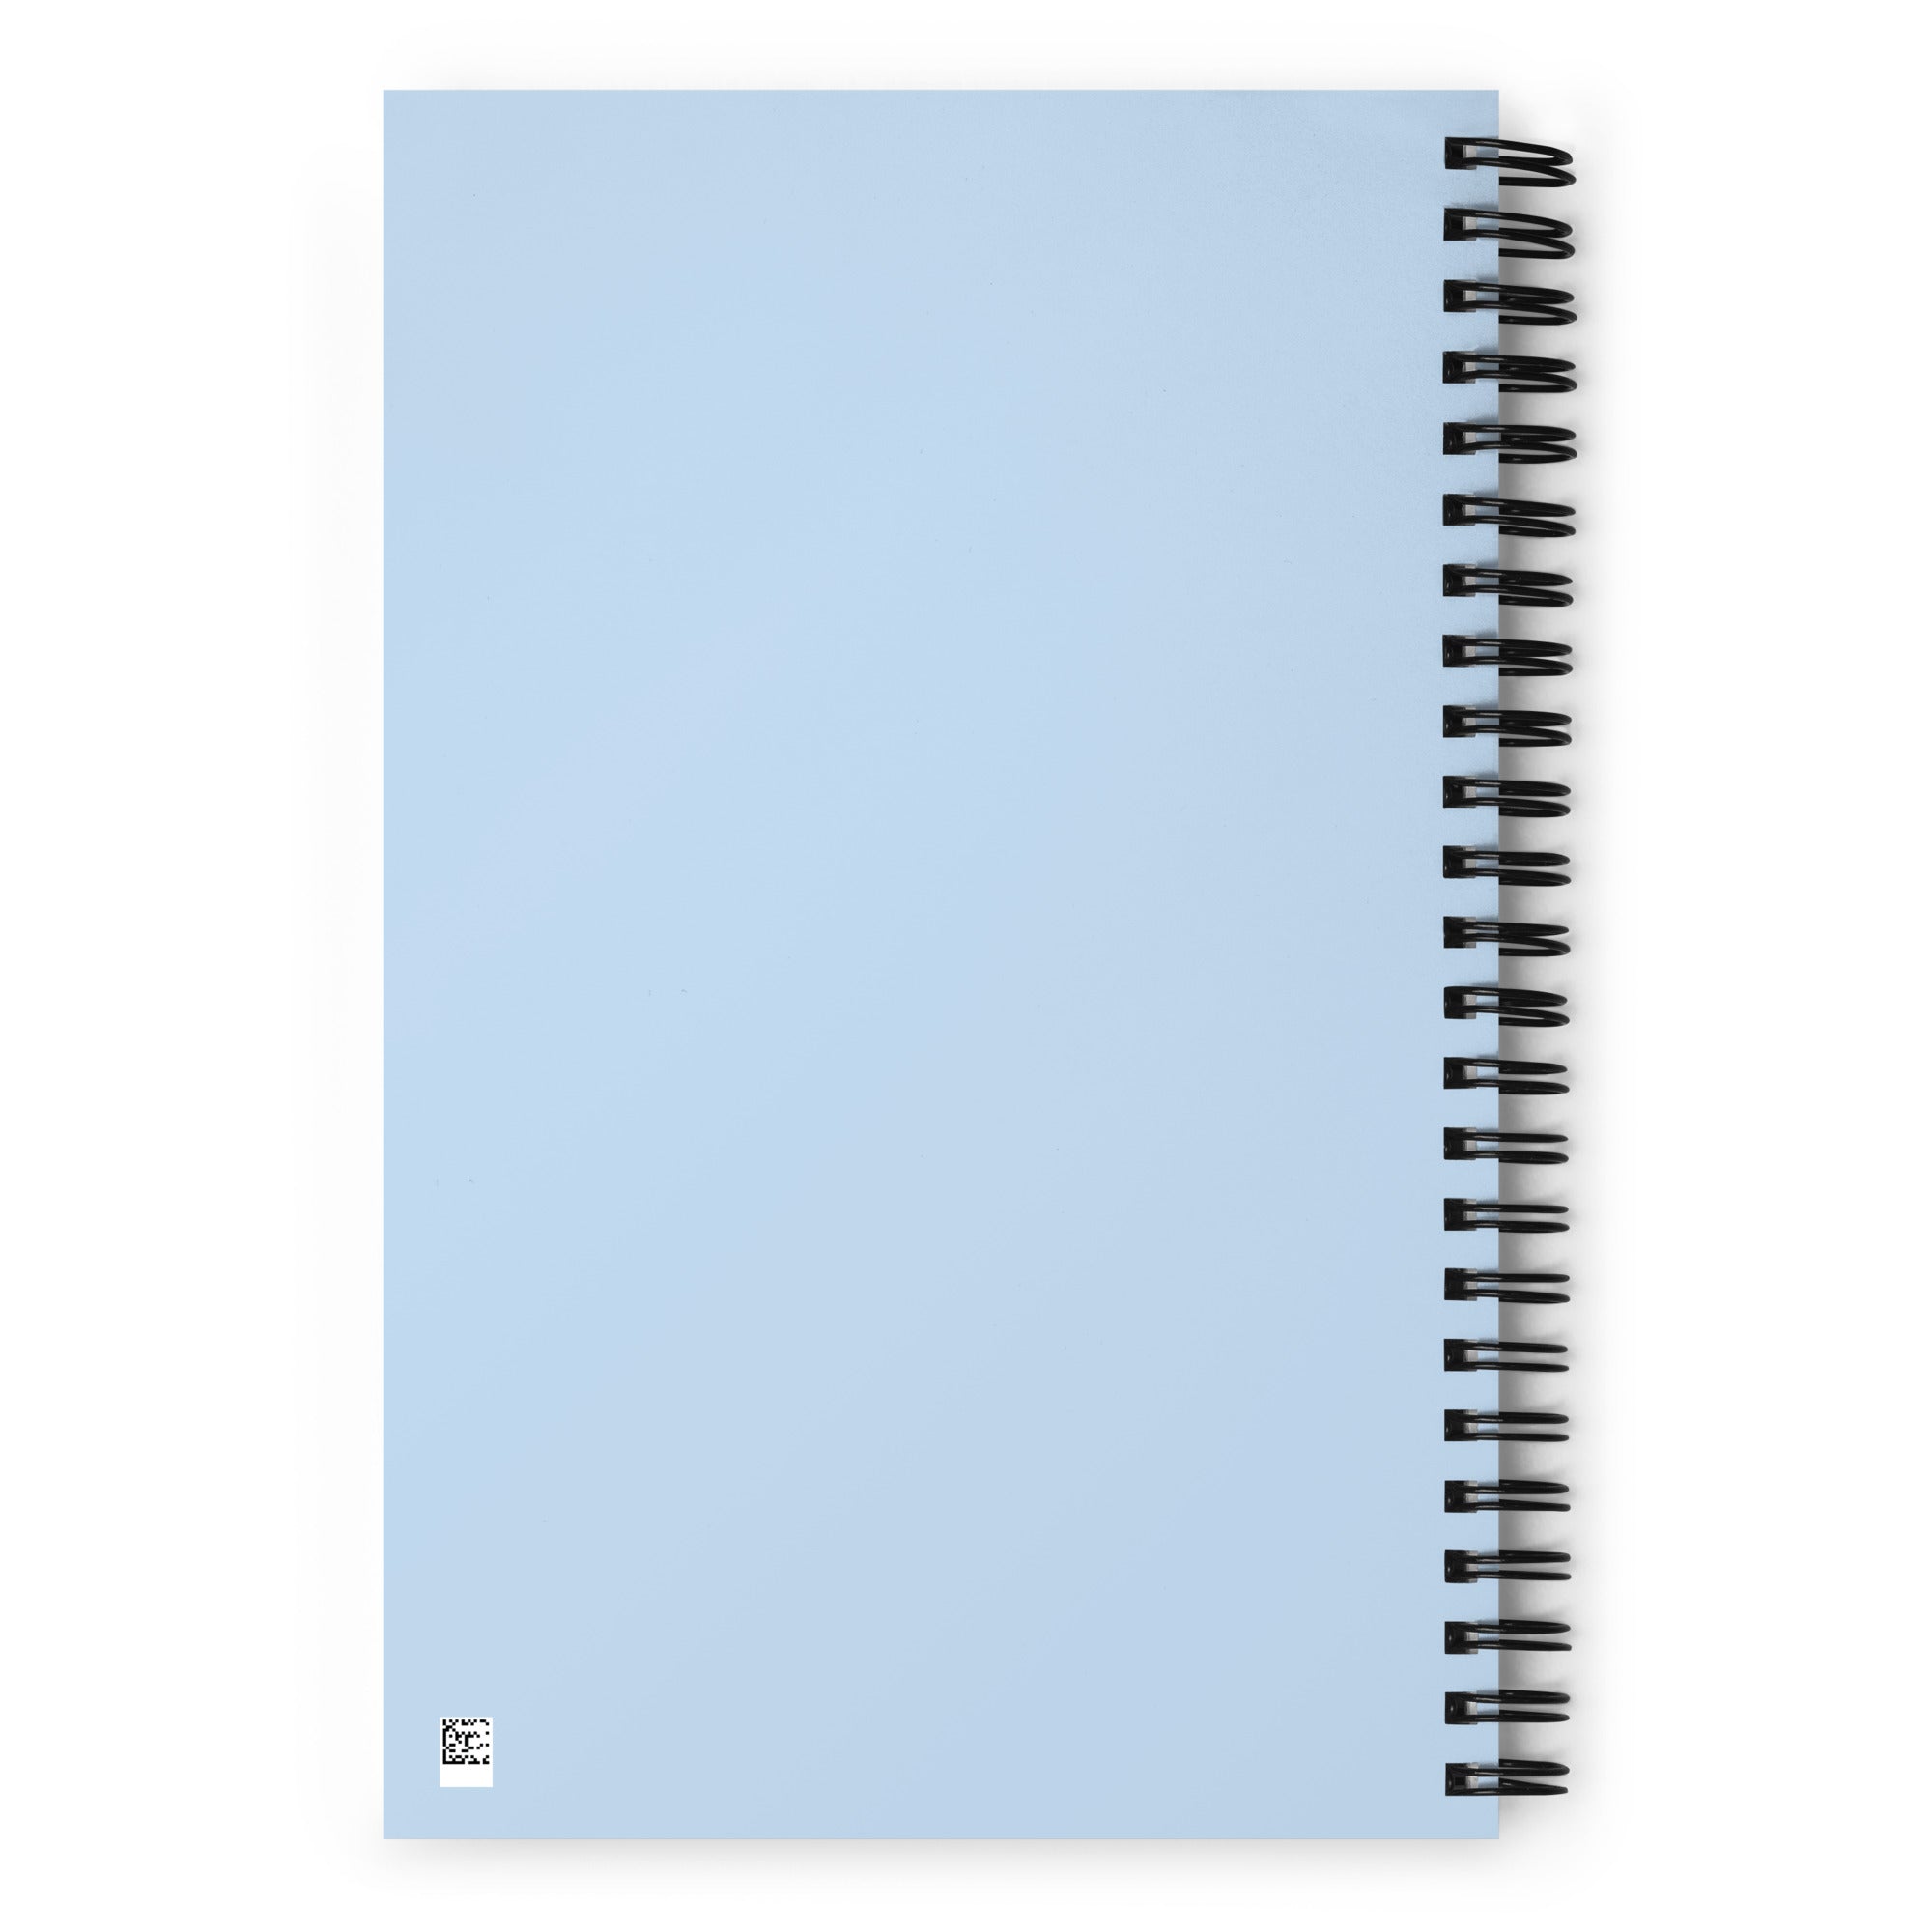 P TECH Spiral notebook